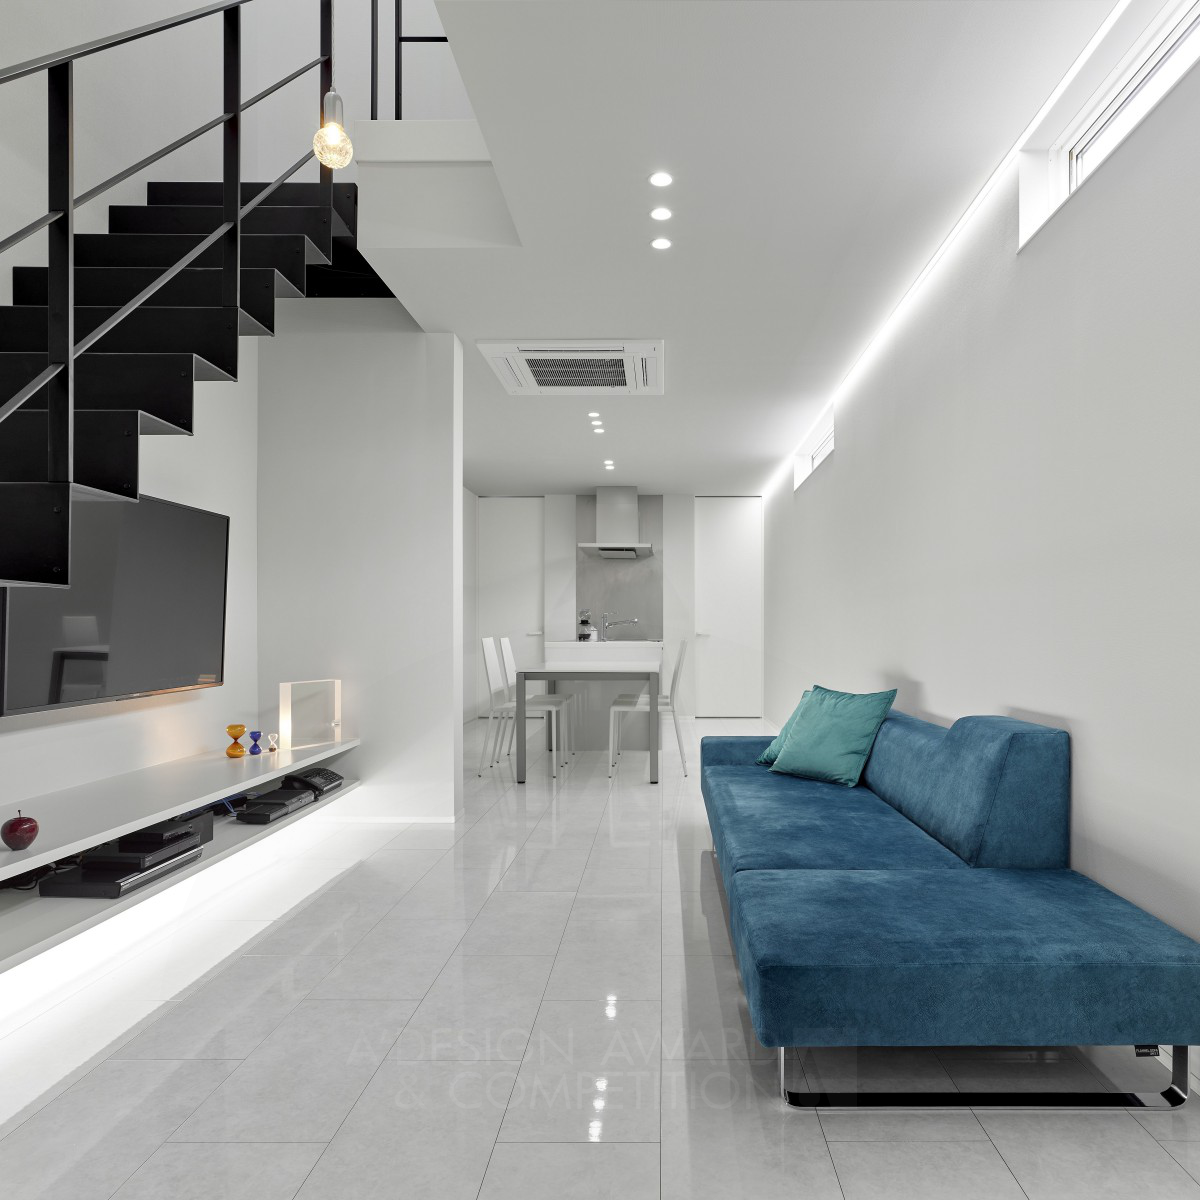 TOMOHIRO ARAKI wins Iron at the prestigious A' Interior Space, Retail and Exhibition Design Award with White Box House.